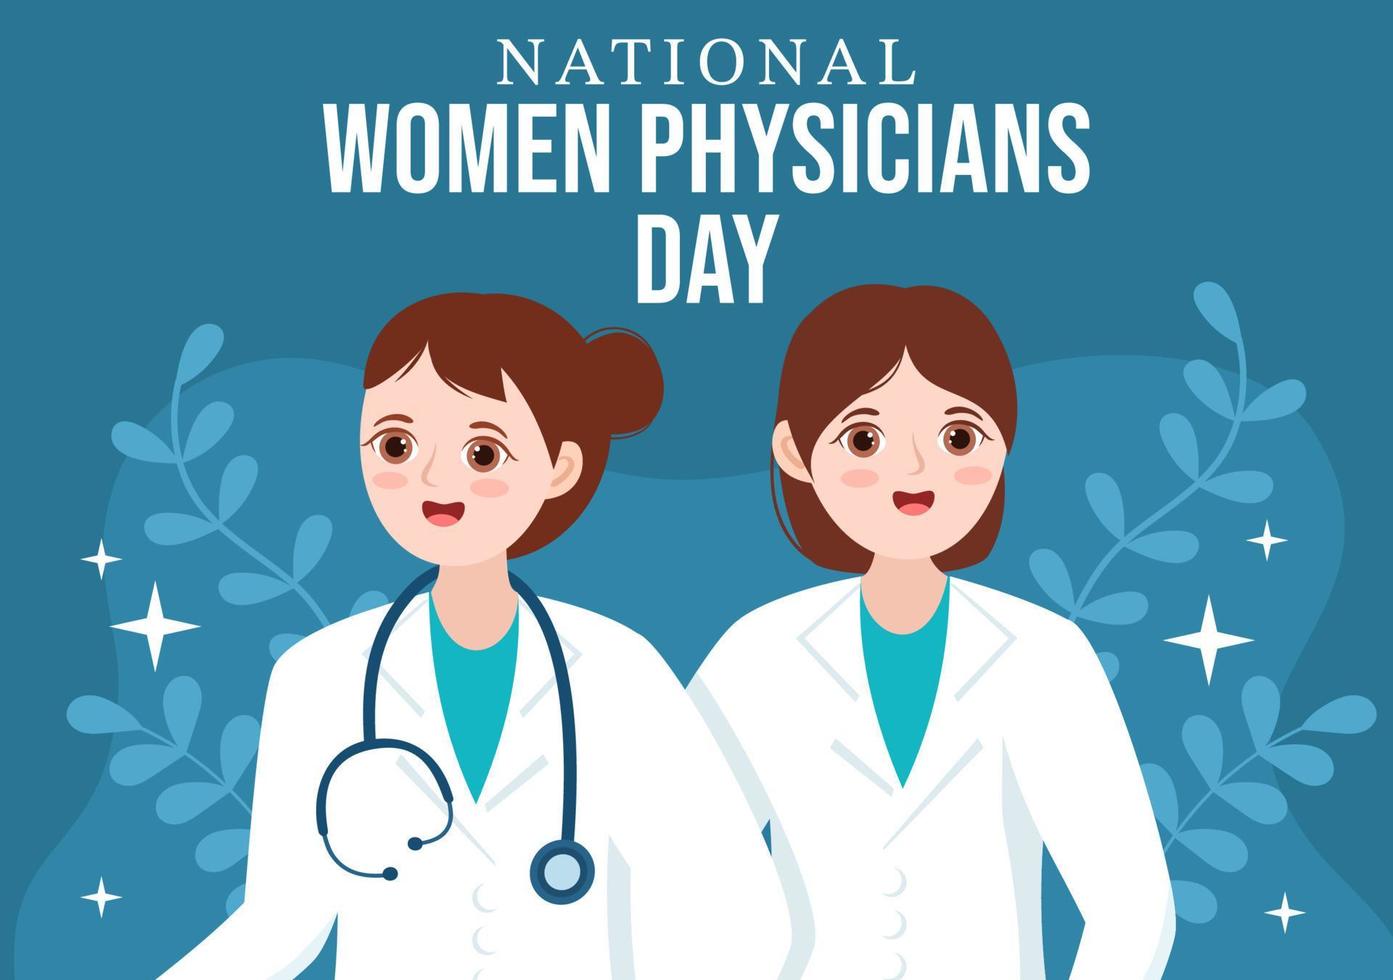 día nacional de las médicas el 3 de febrero para honrar a las doctoras de todo el país en dibujos animados planos dibujados a mano ilustración de plantillas vector